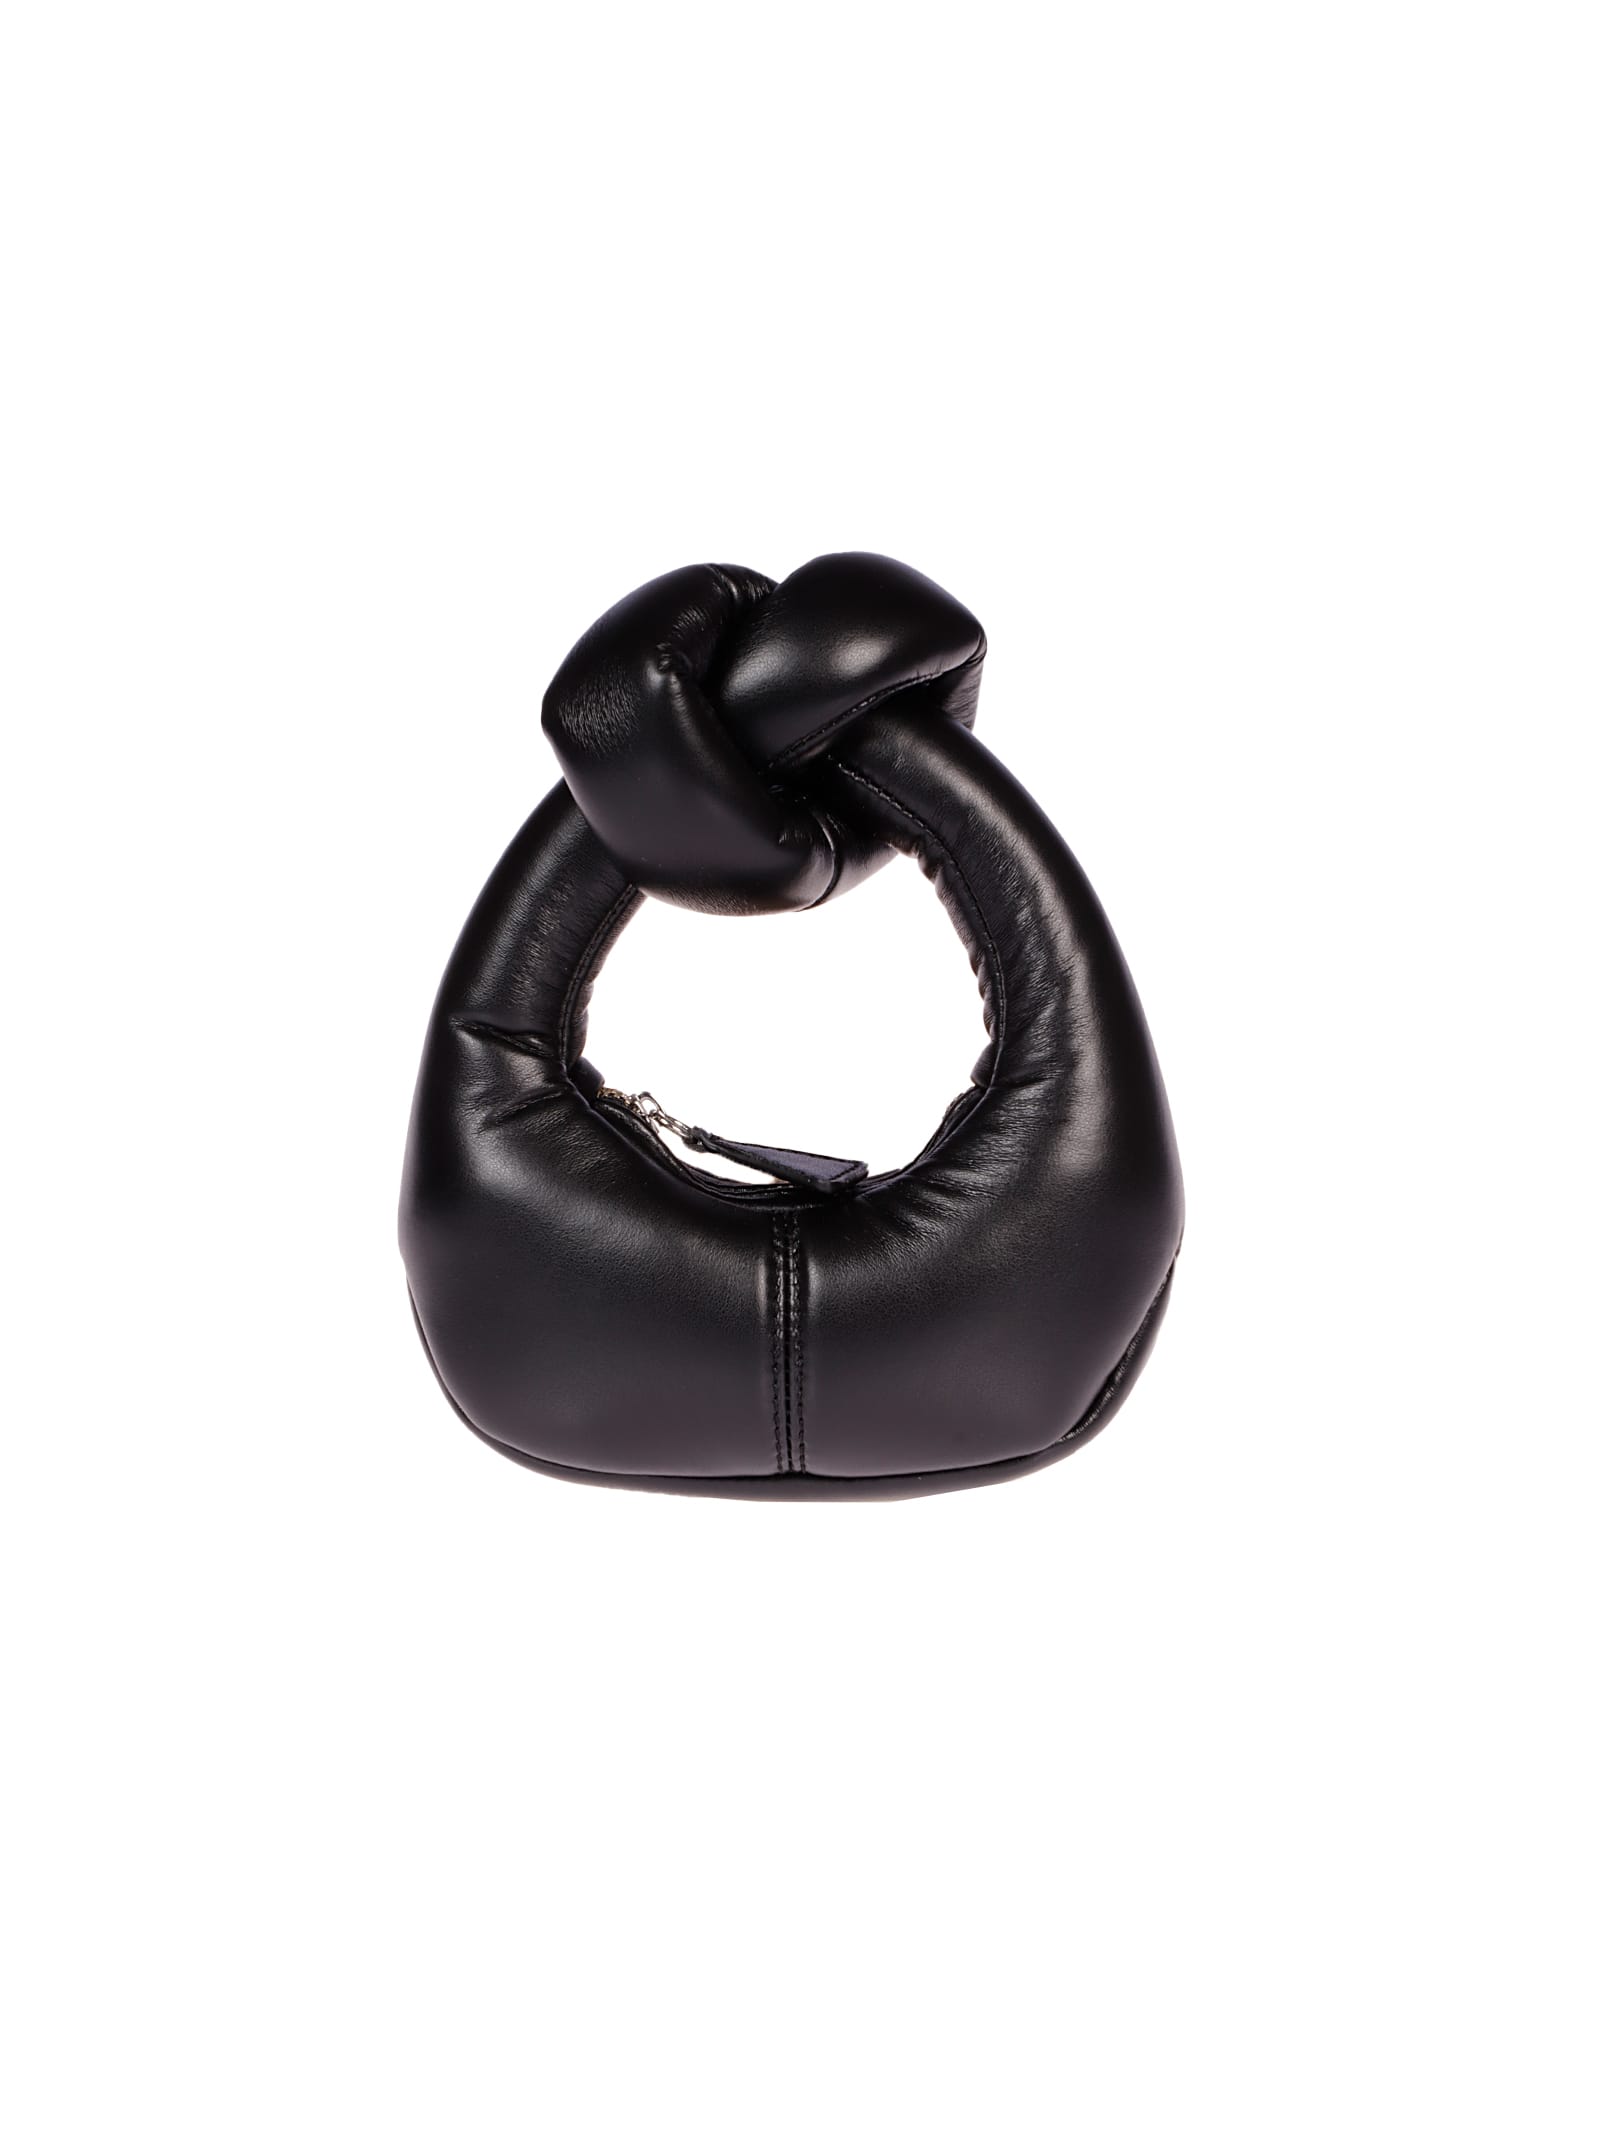 A.W.A.K.E. Mode Mini Mia Handbag With Knot Handle